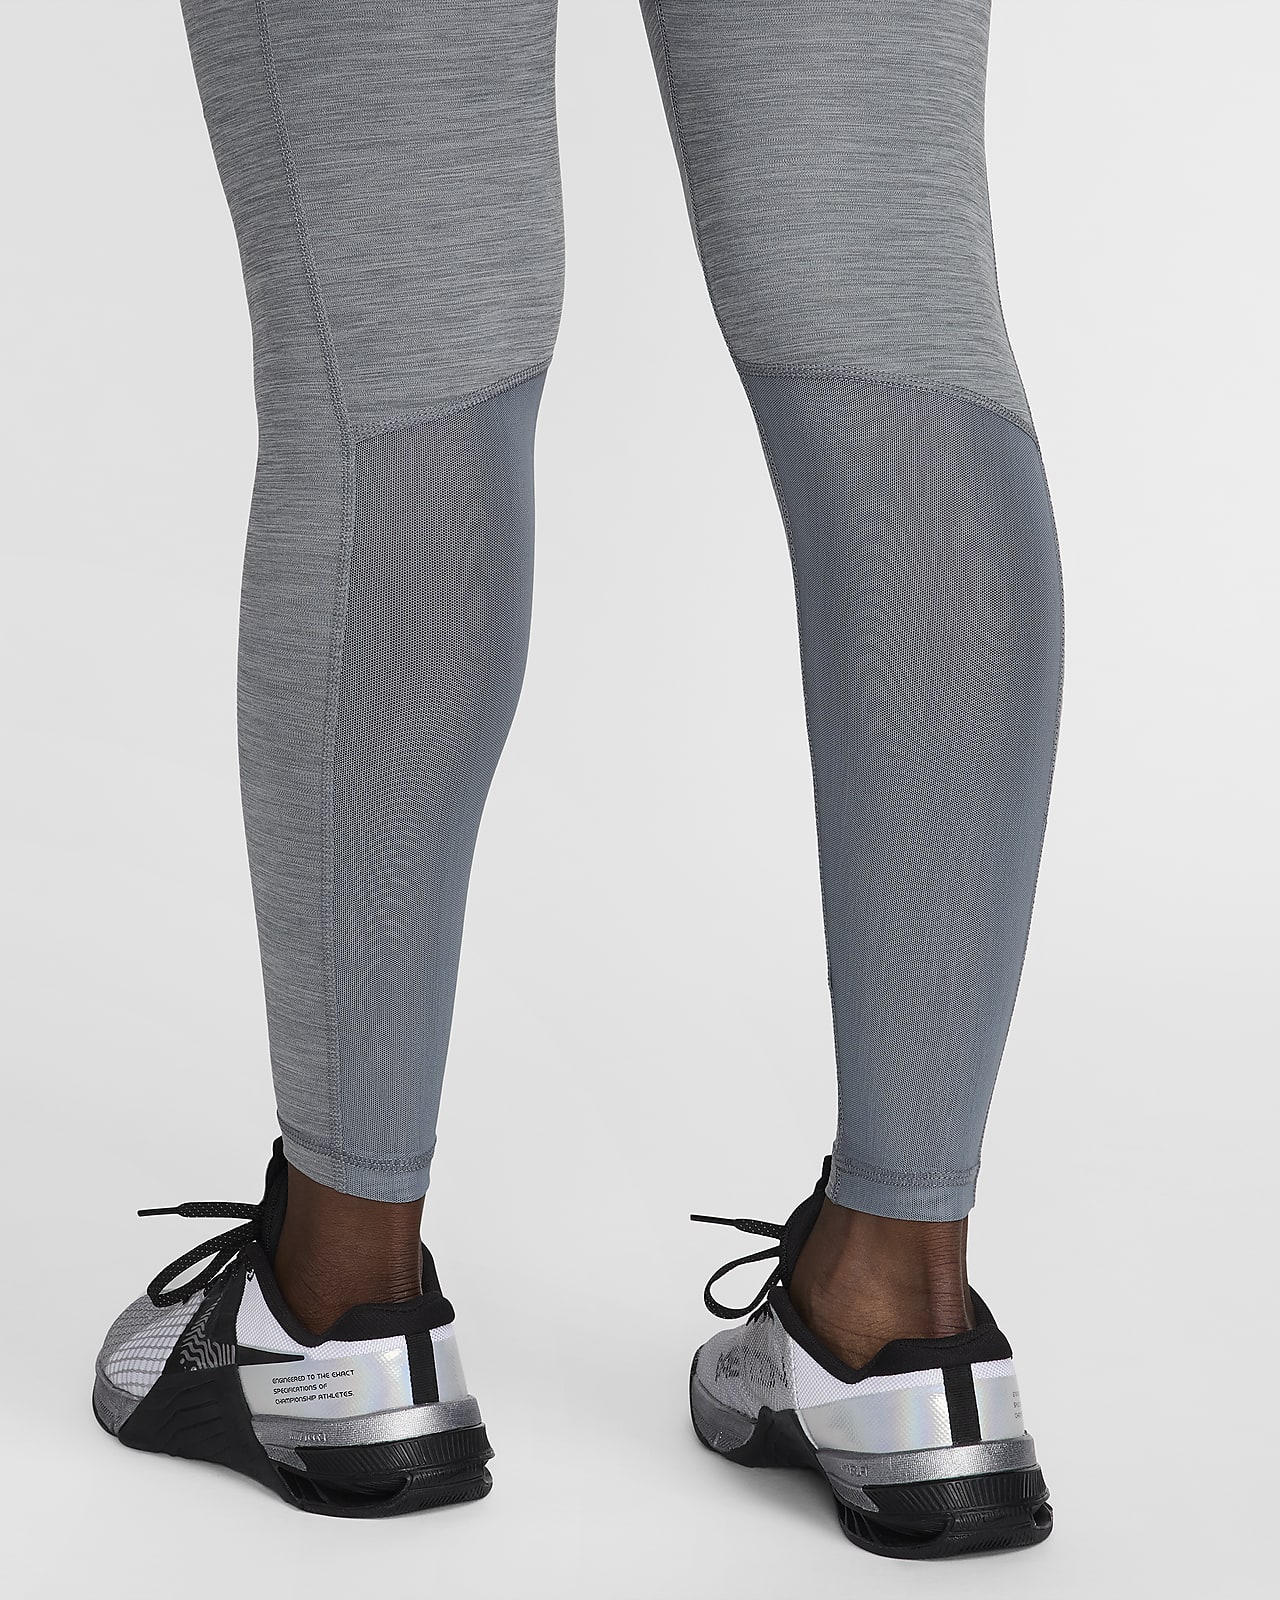 Nike Pro Women's Mid-Rise Leggings. Nike.com